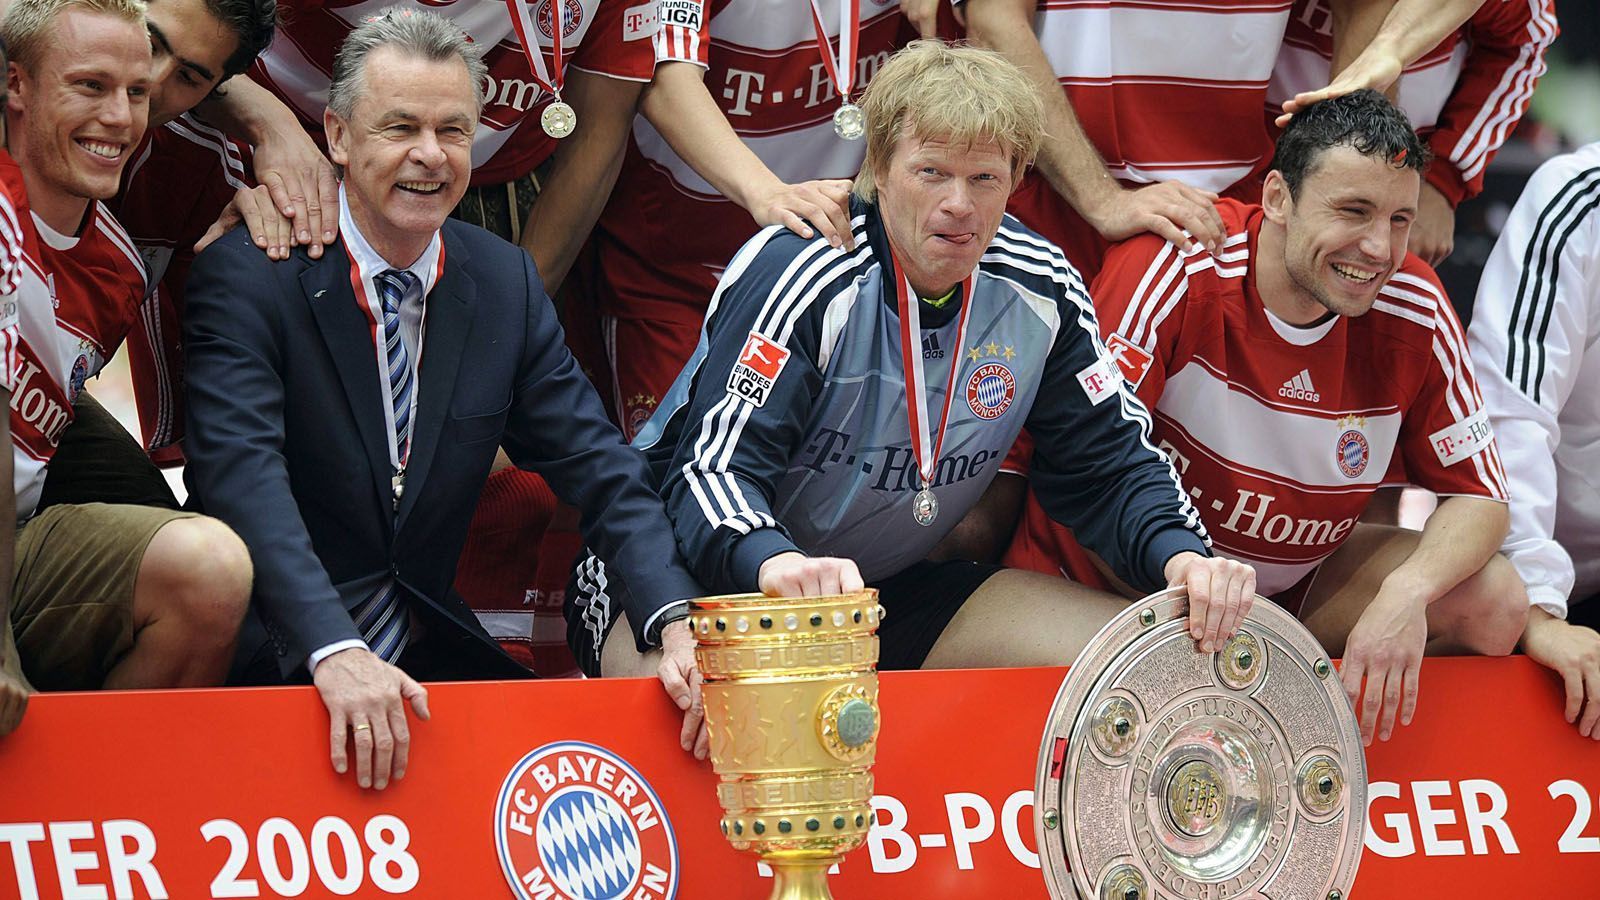 
                <strong>Erfolgsduo Kahn/Hitzfeld</strong><br>
                Zusammen mit Ottmar Hitzfeld gewann Oliver Kahn seine meisten Titel. Fünf gemeinsame Meisterschaften und drei DFB-Pokal-Erfolge sowie den Champions League und Weltpokal-Triumph konnten der charismatische Coach und der Titan gemeinsam feiern. 2008 verließen beide den Verein.  
              